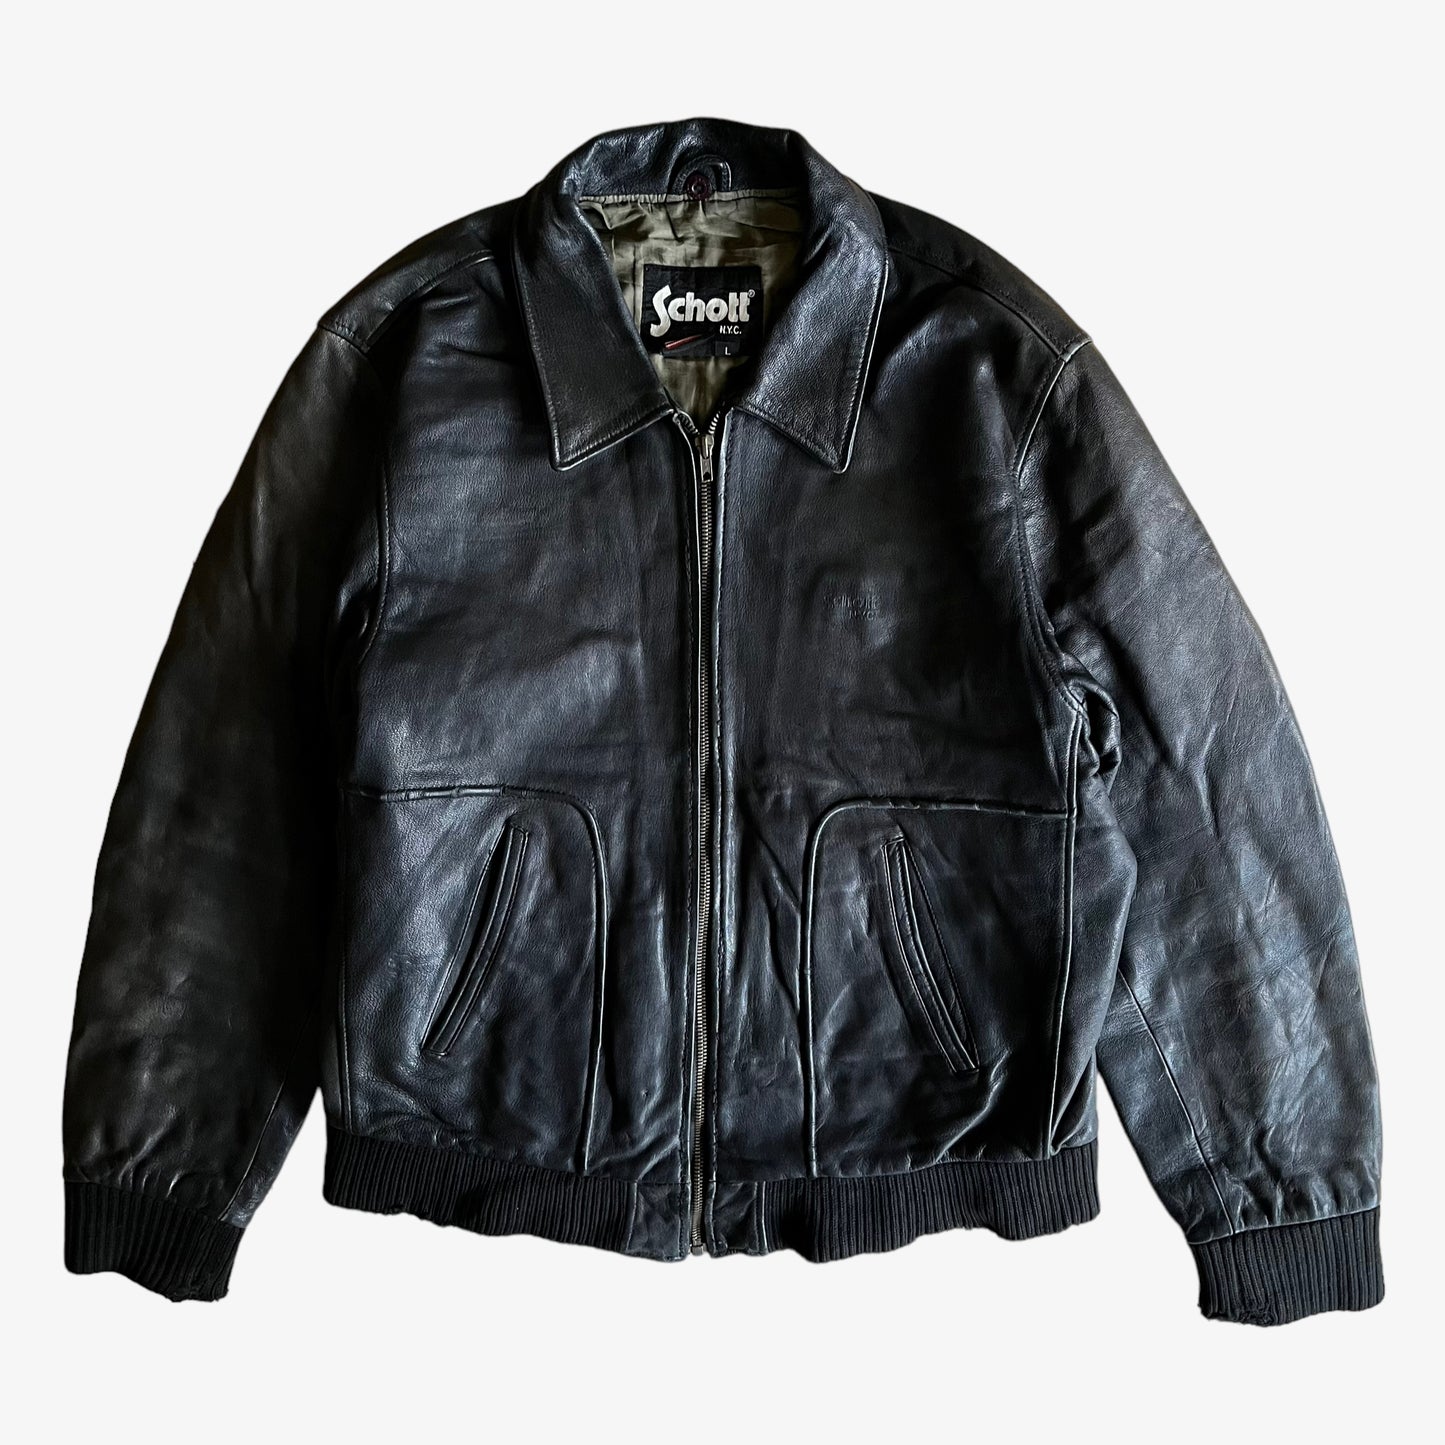 Vintage 90s Schott NYC Black Leather Jacket - Casspios Dream